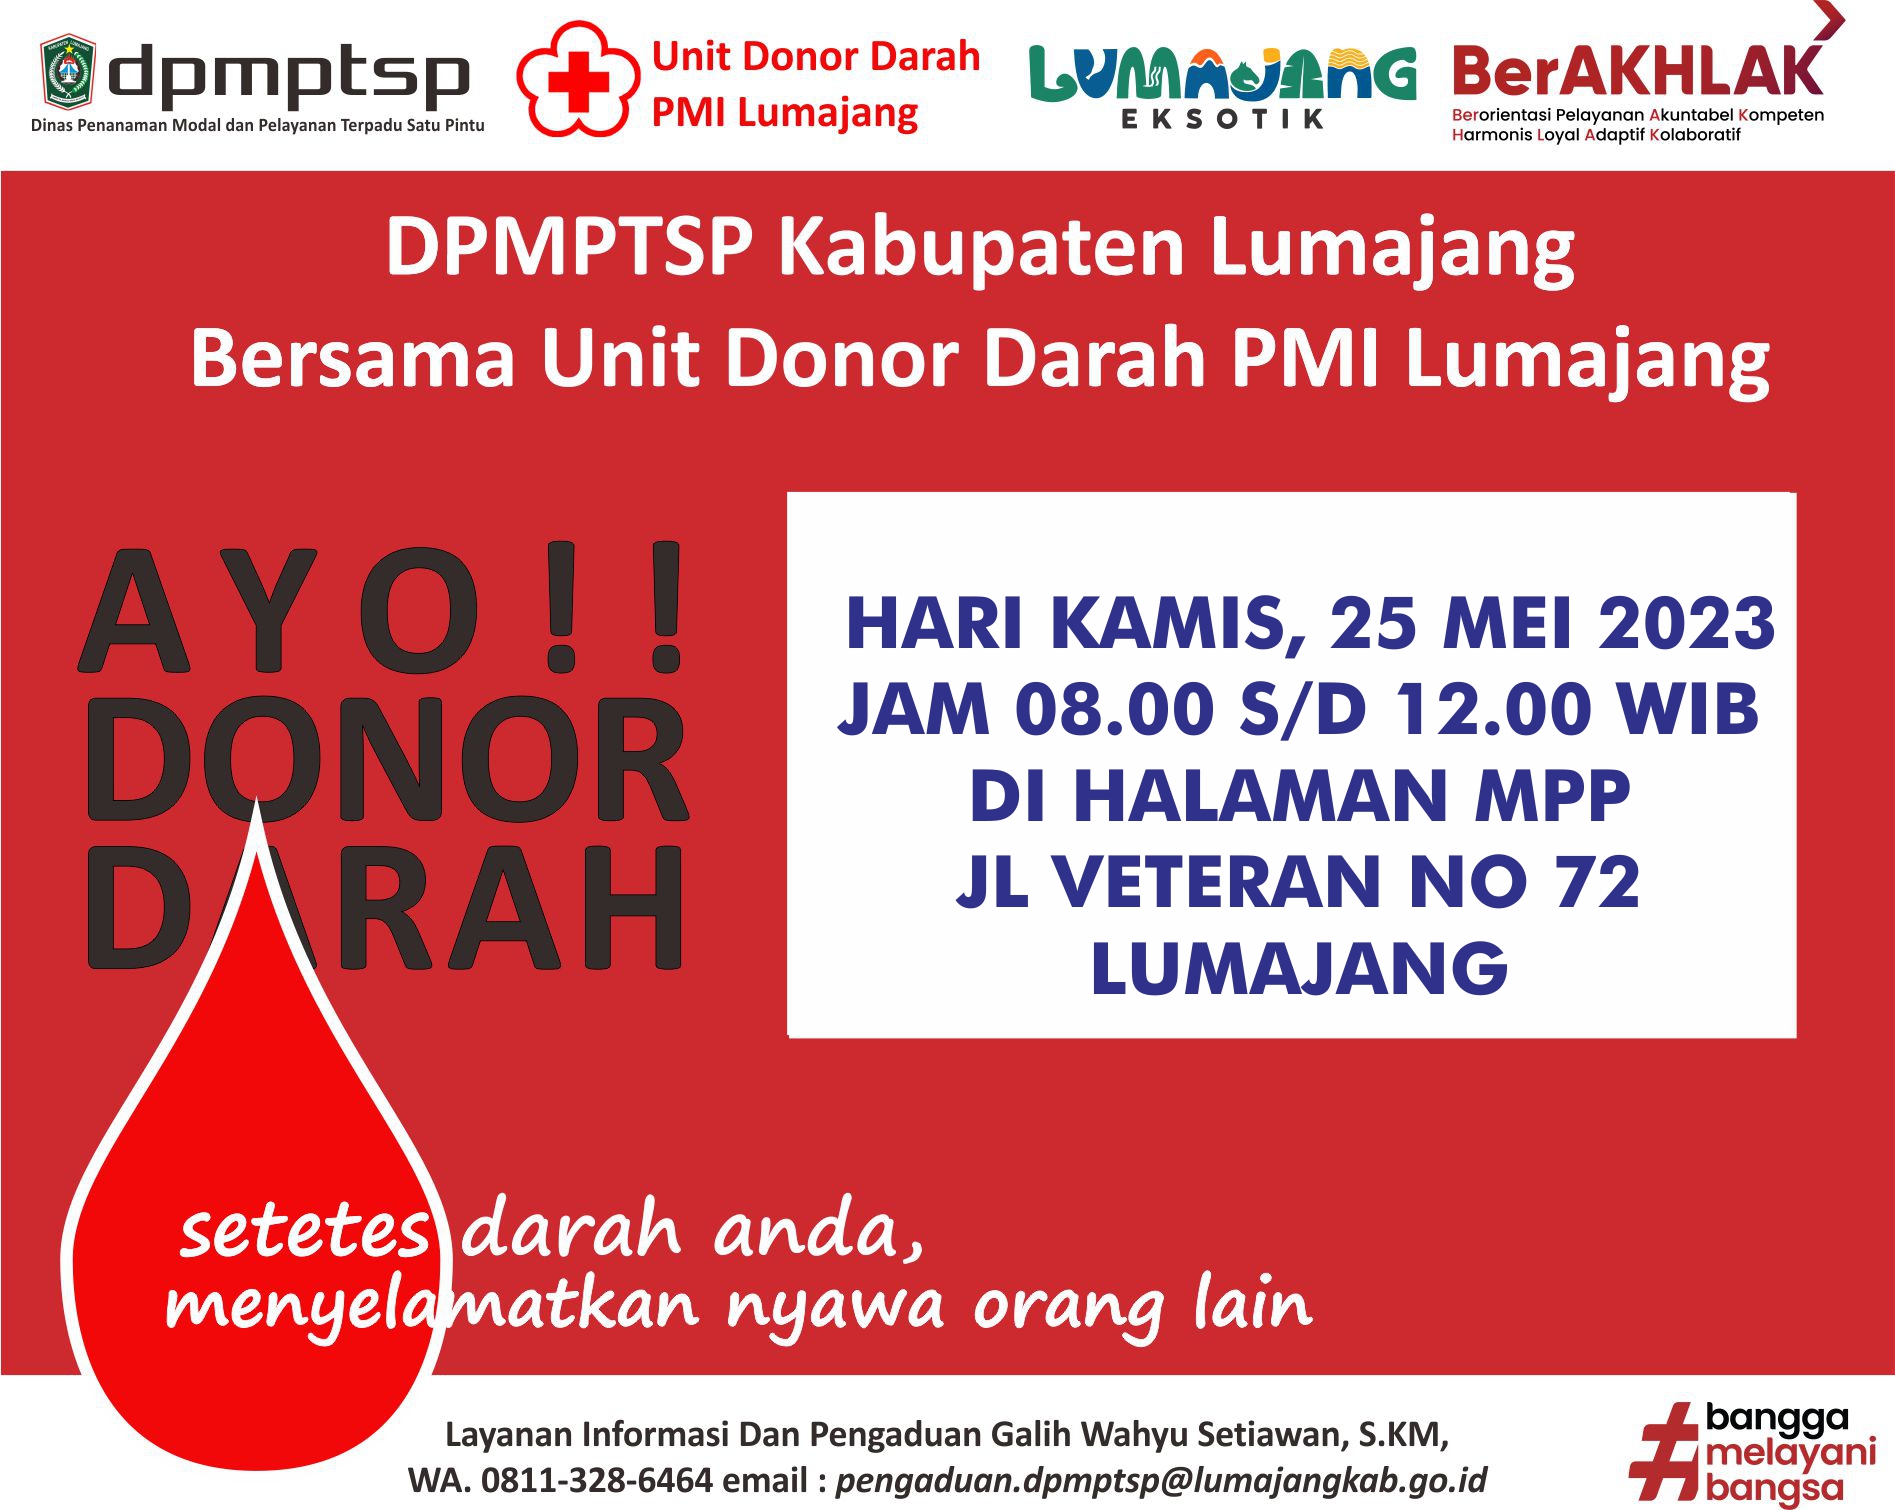 POJOK INFO : Jadwal Layanan Donor Darah di MPP (Kamis, 25 Mei 2023)